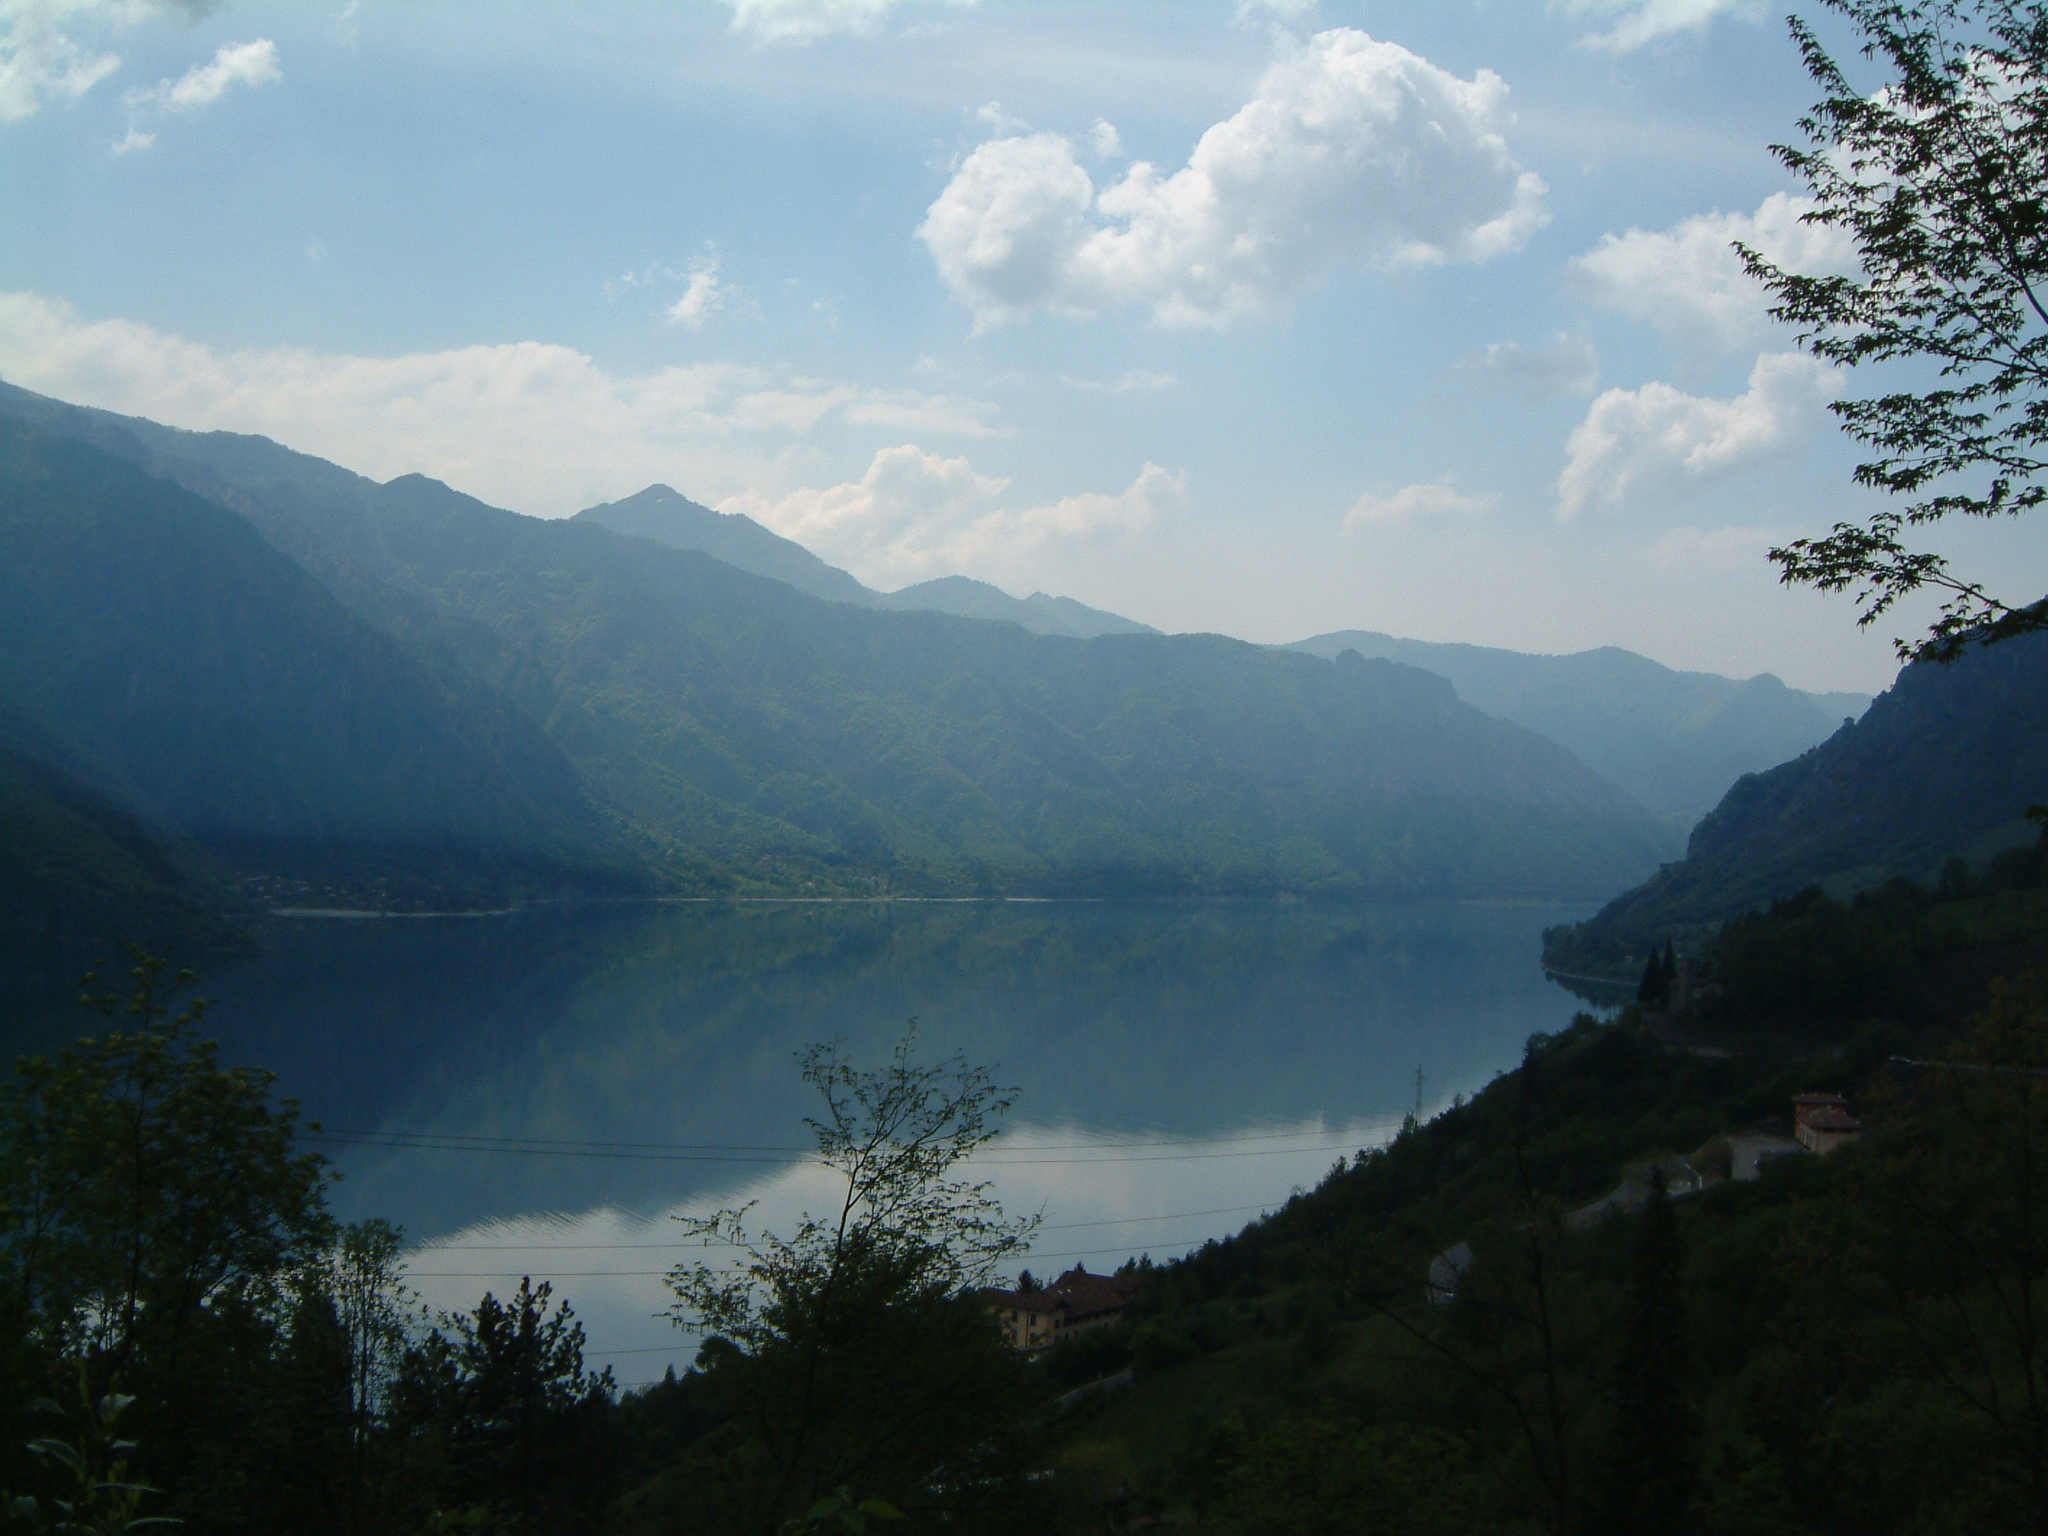 Lago d'Idro